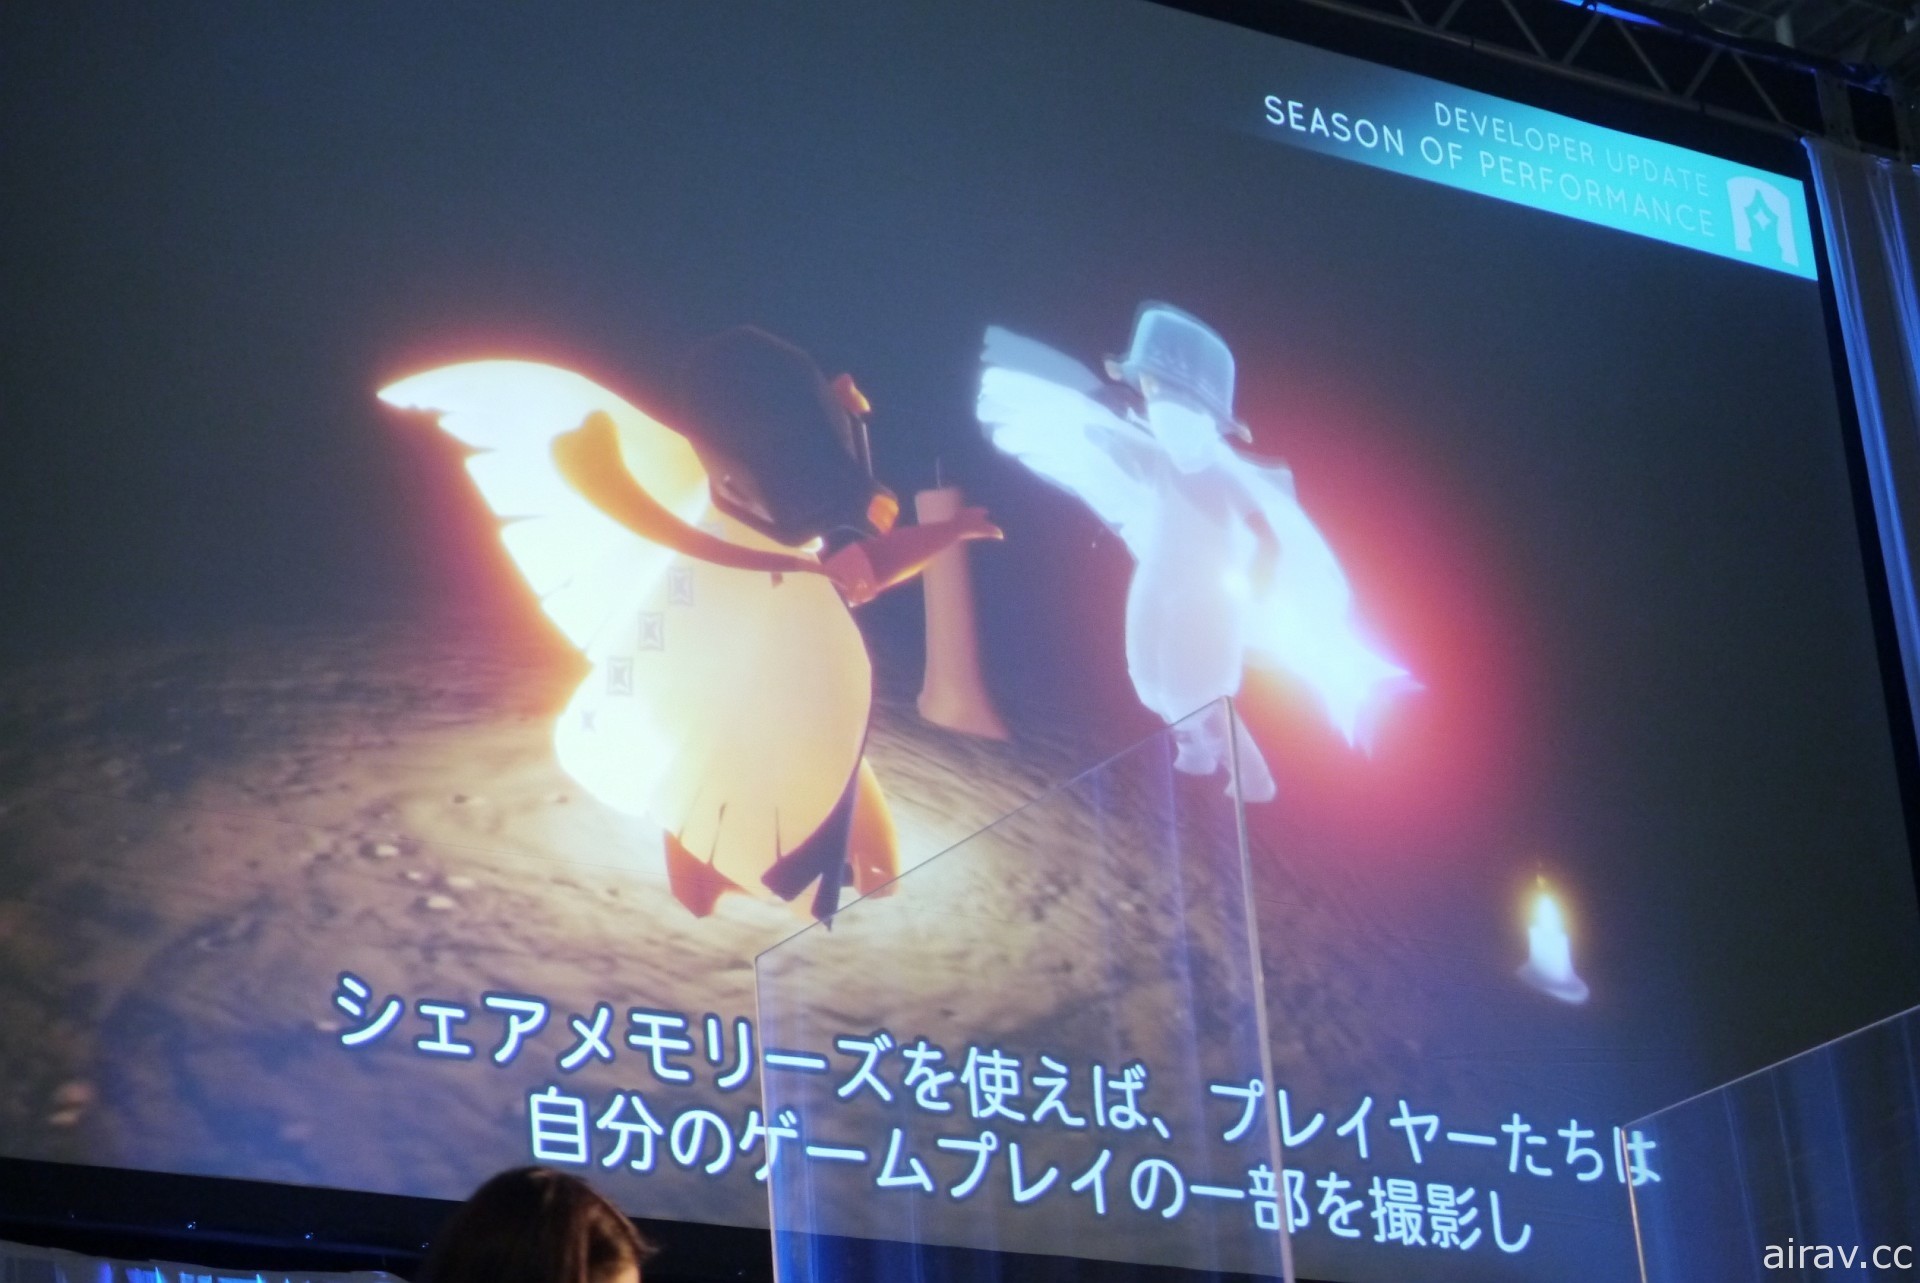 《Sky 光・遇》AnimeJapan 2022 舞台活动报导 声优梶裕贵被任命为特别支援者